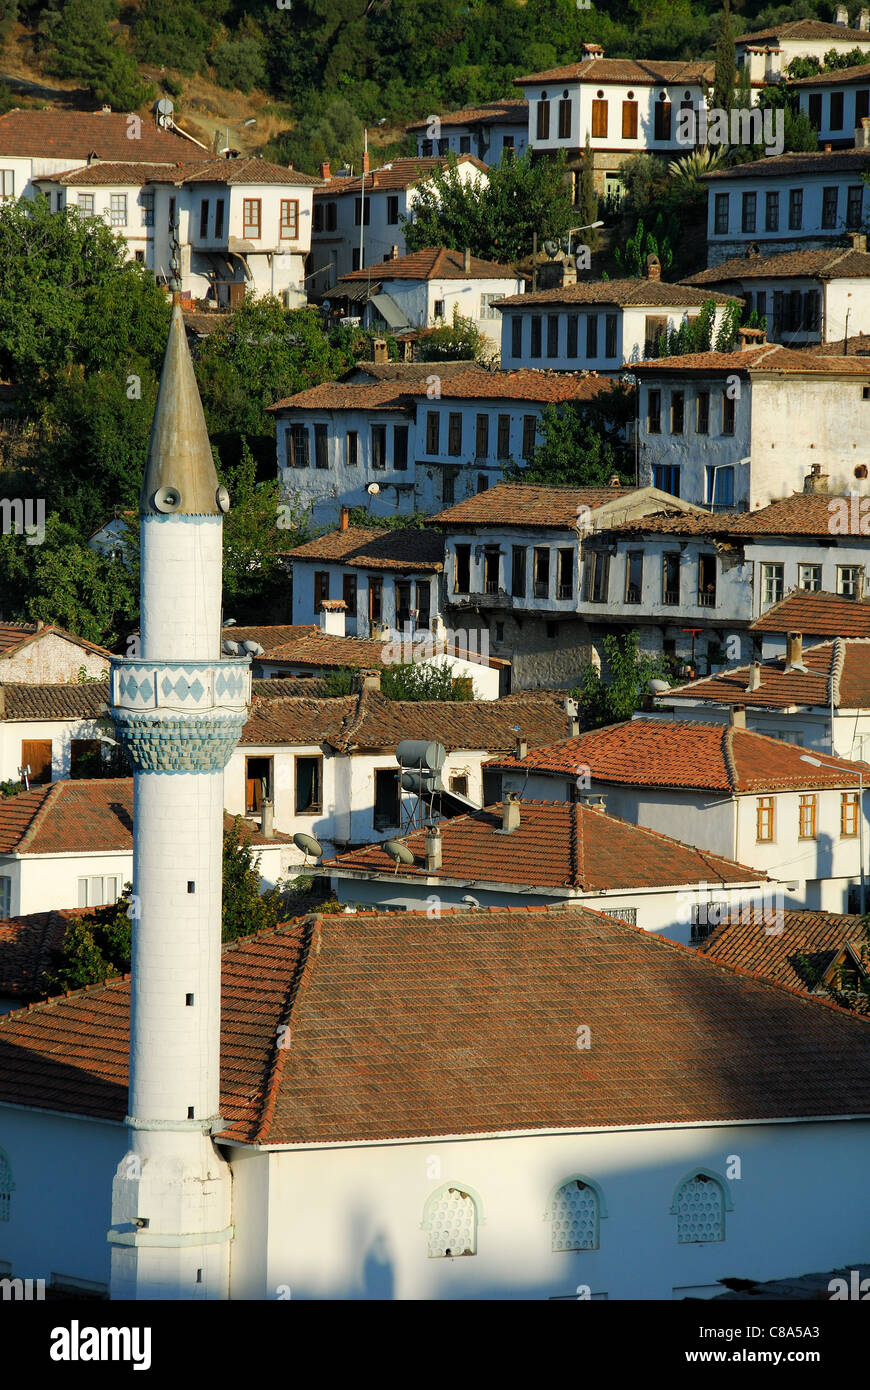 SIRINCE, vicino a Selcuk, Turchia. Una vista serale del borgo collinare. 2011. Foto Stock